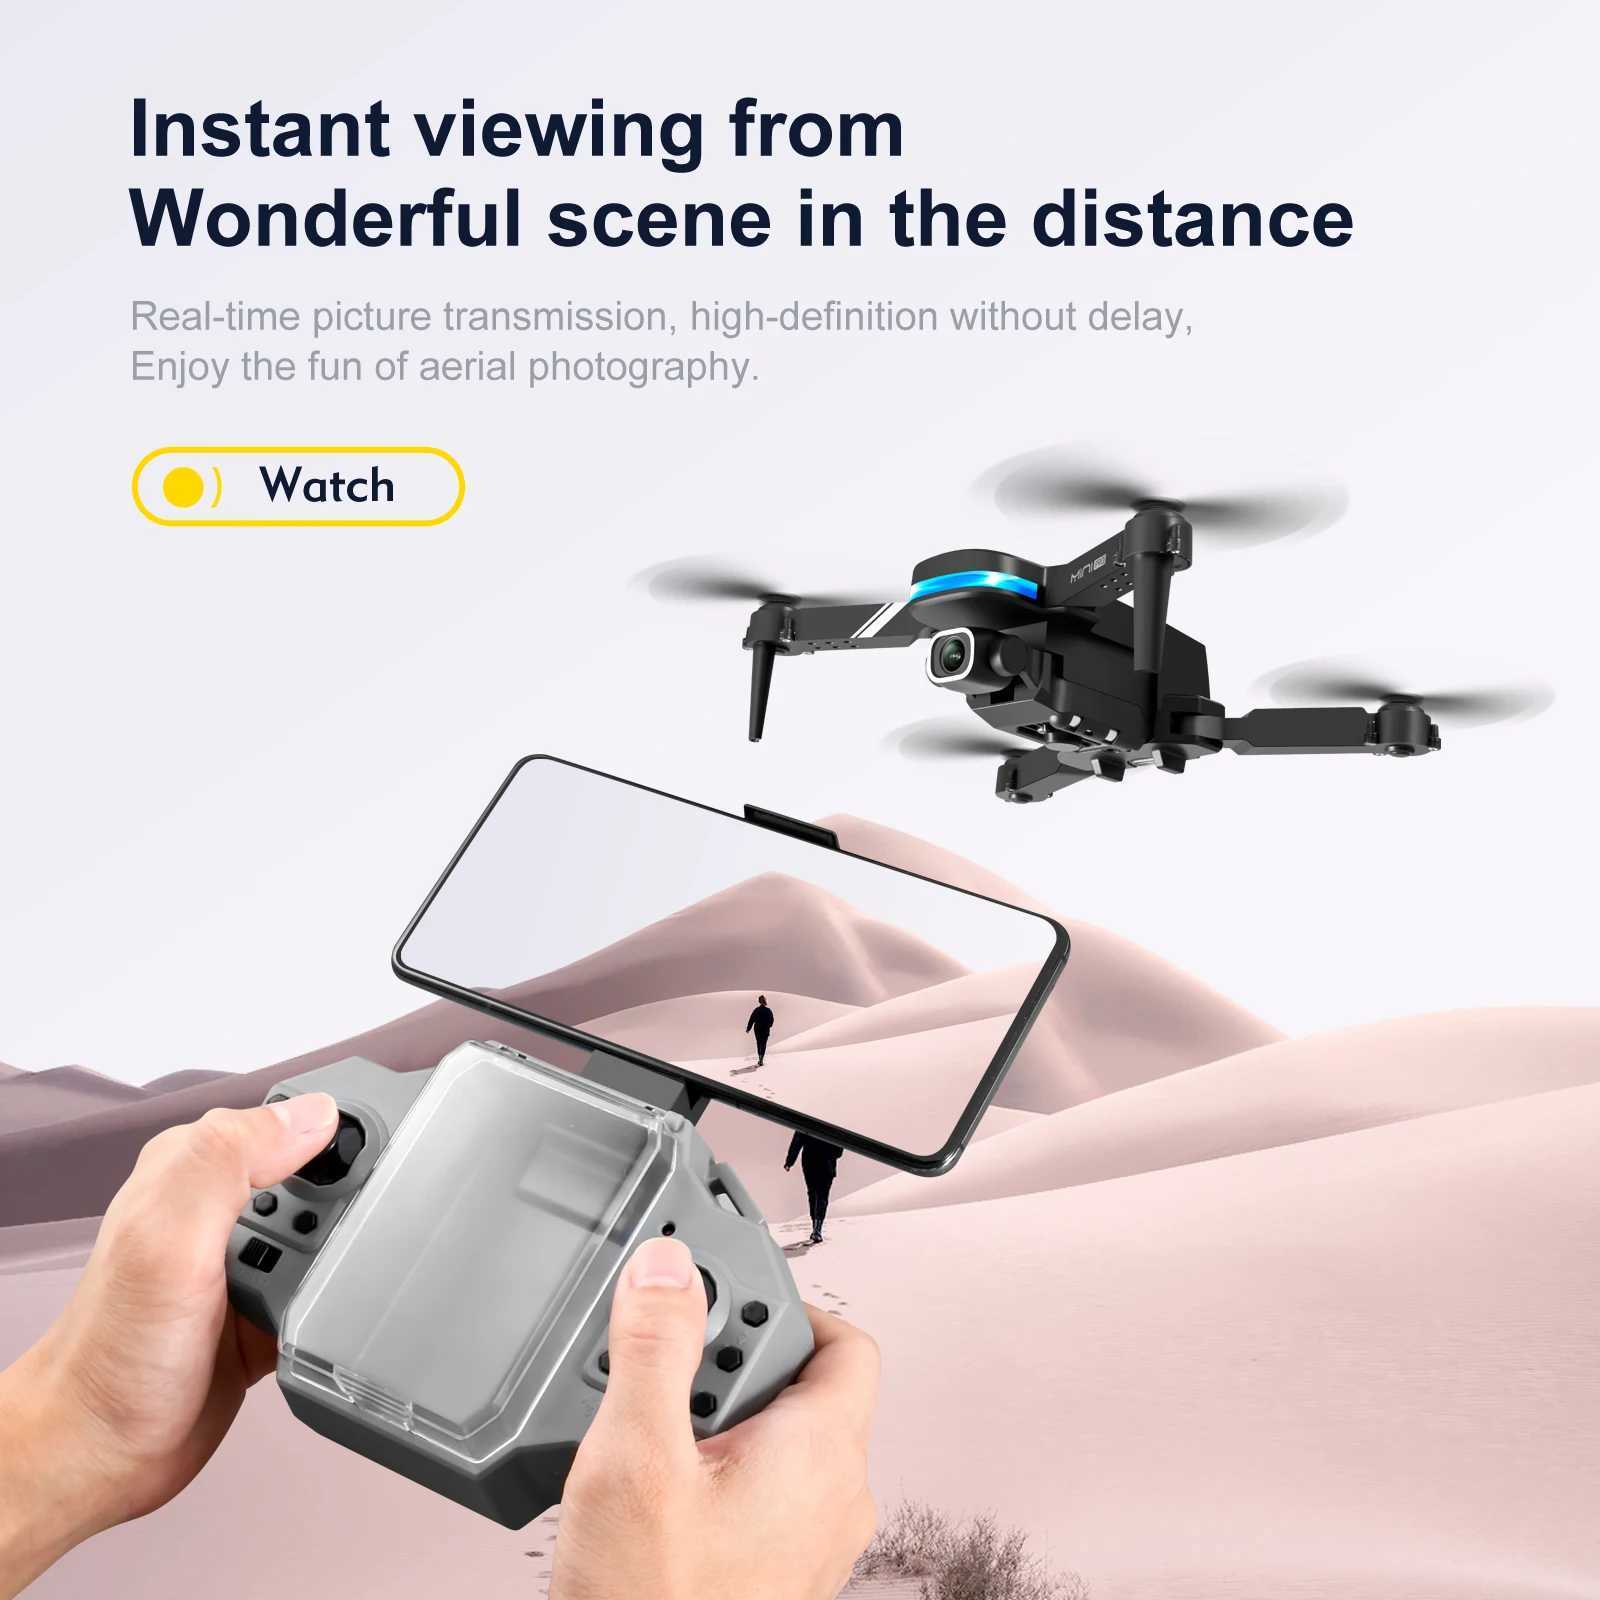 Drones Mini Pocket Drone 4K HD Double appareil photo WiFi FPV Photographie aérienne pliable RC Quadcopter App Contrôle Téléphone Contrôle Fli Aircraft à 360 degrés 24416